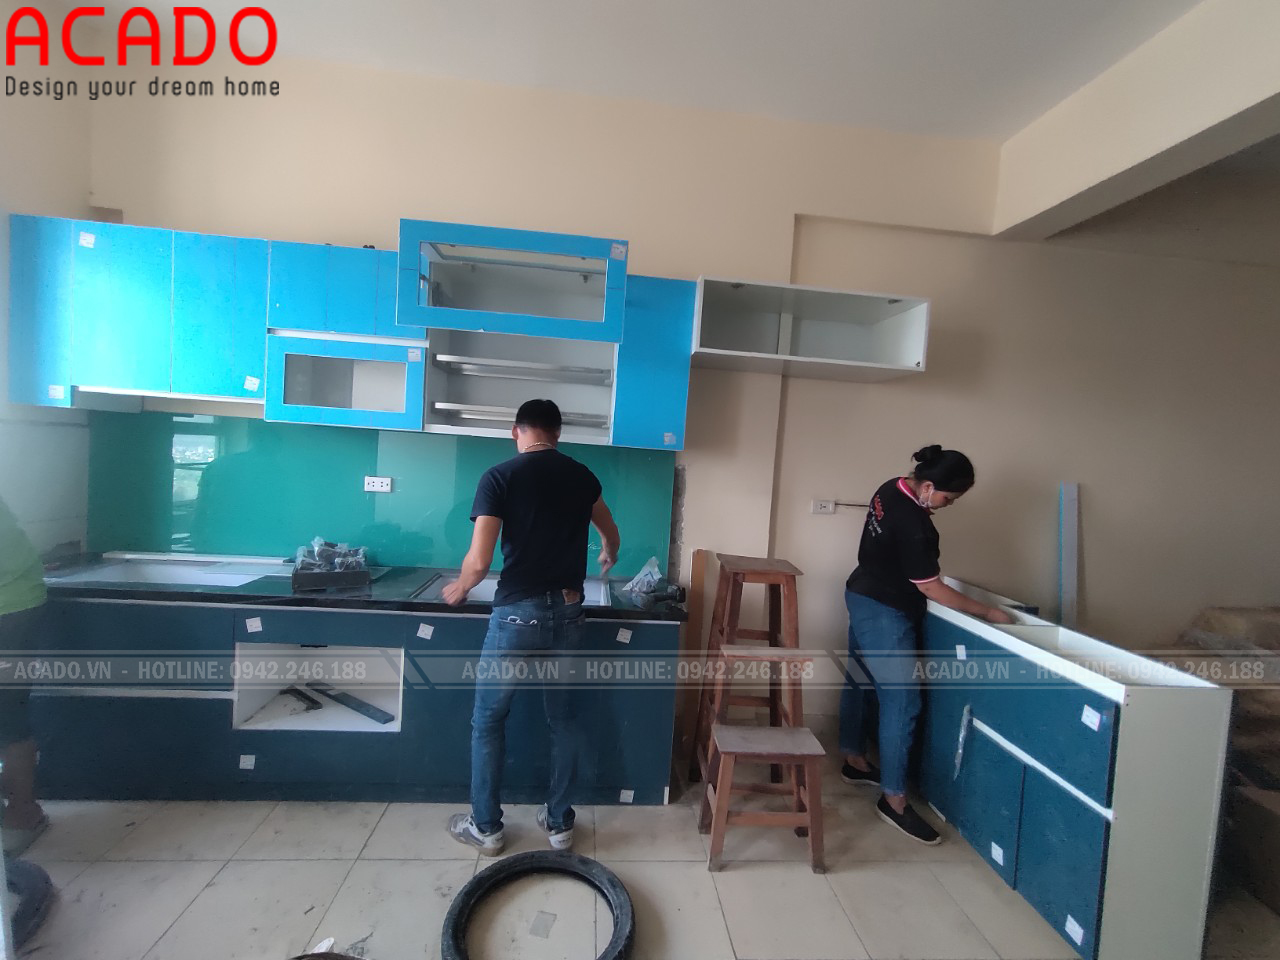 Hình ảnh quá trình thi công tủ bếp cho gia đình chị Ngọc